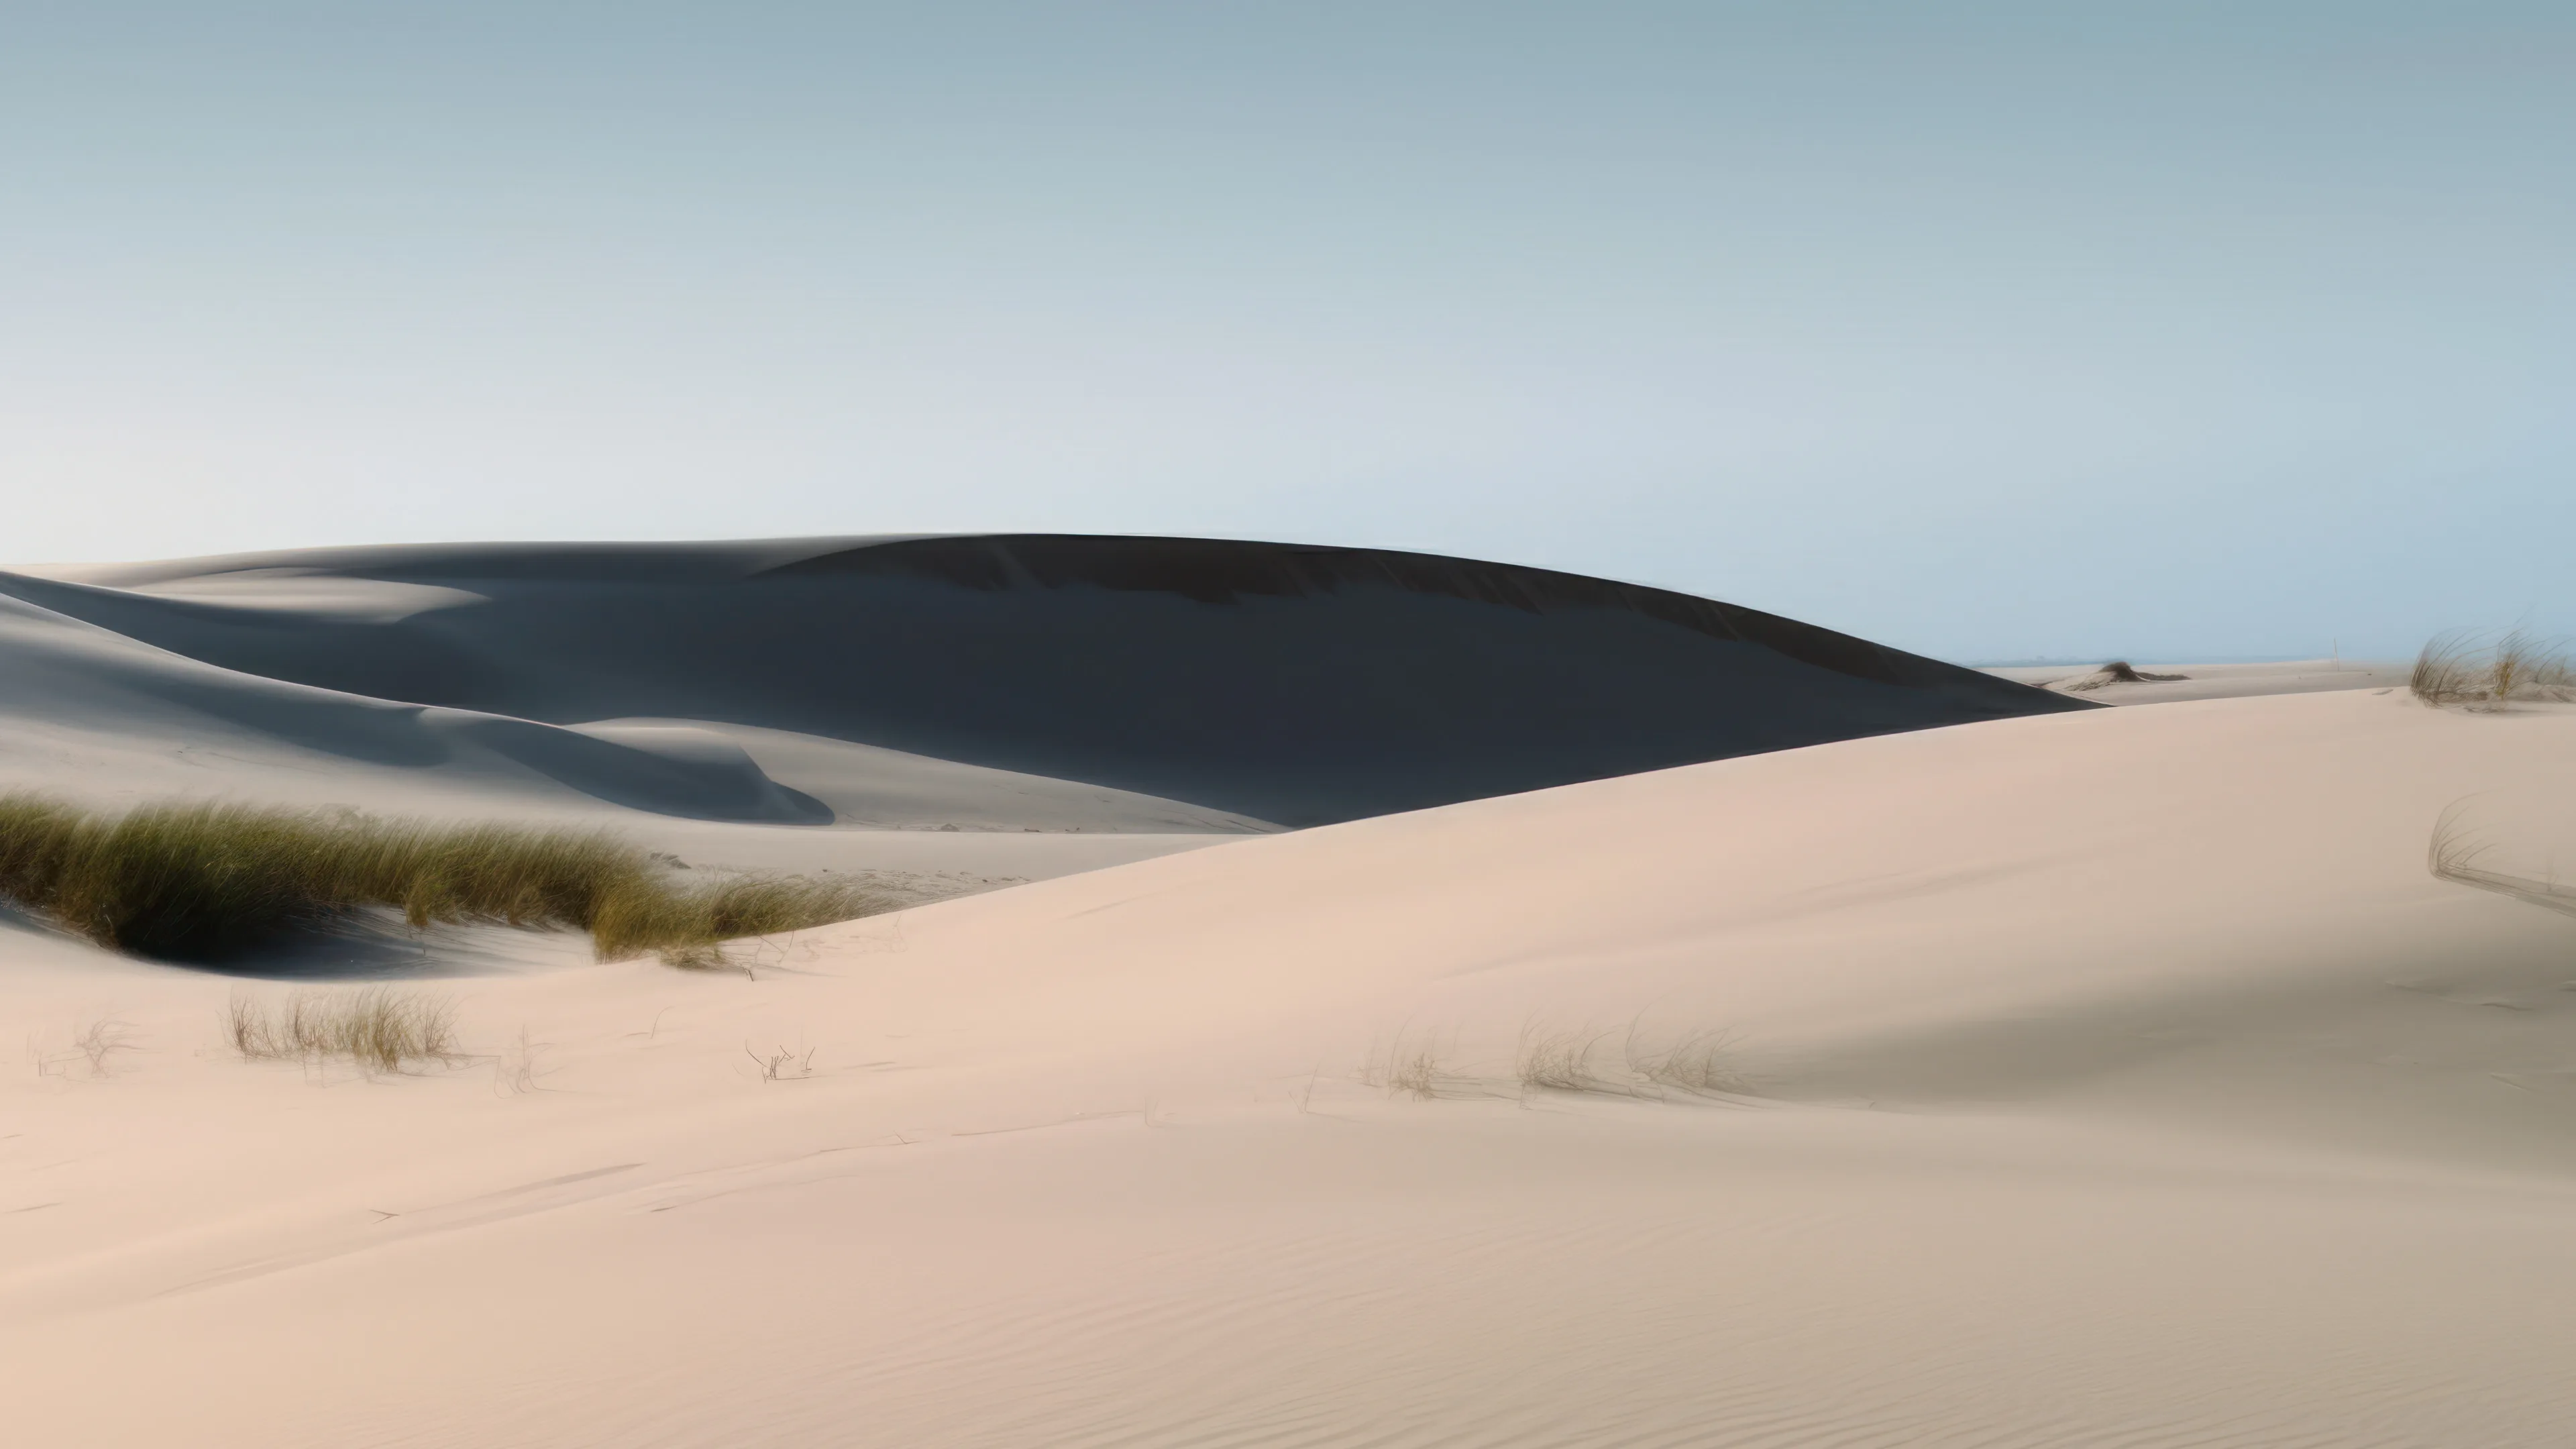 Sand dunes in Desert 4K Wallpapers | HD Wallpapers | ID #28431